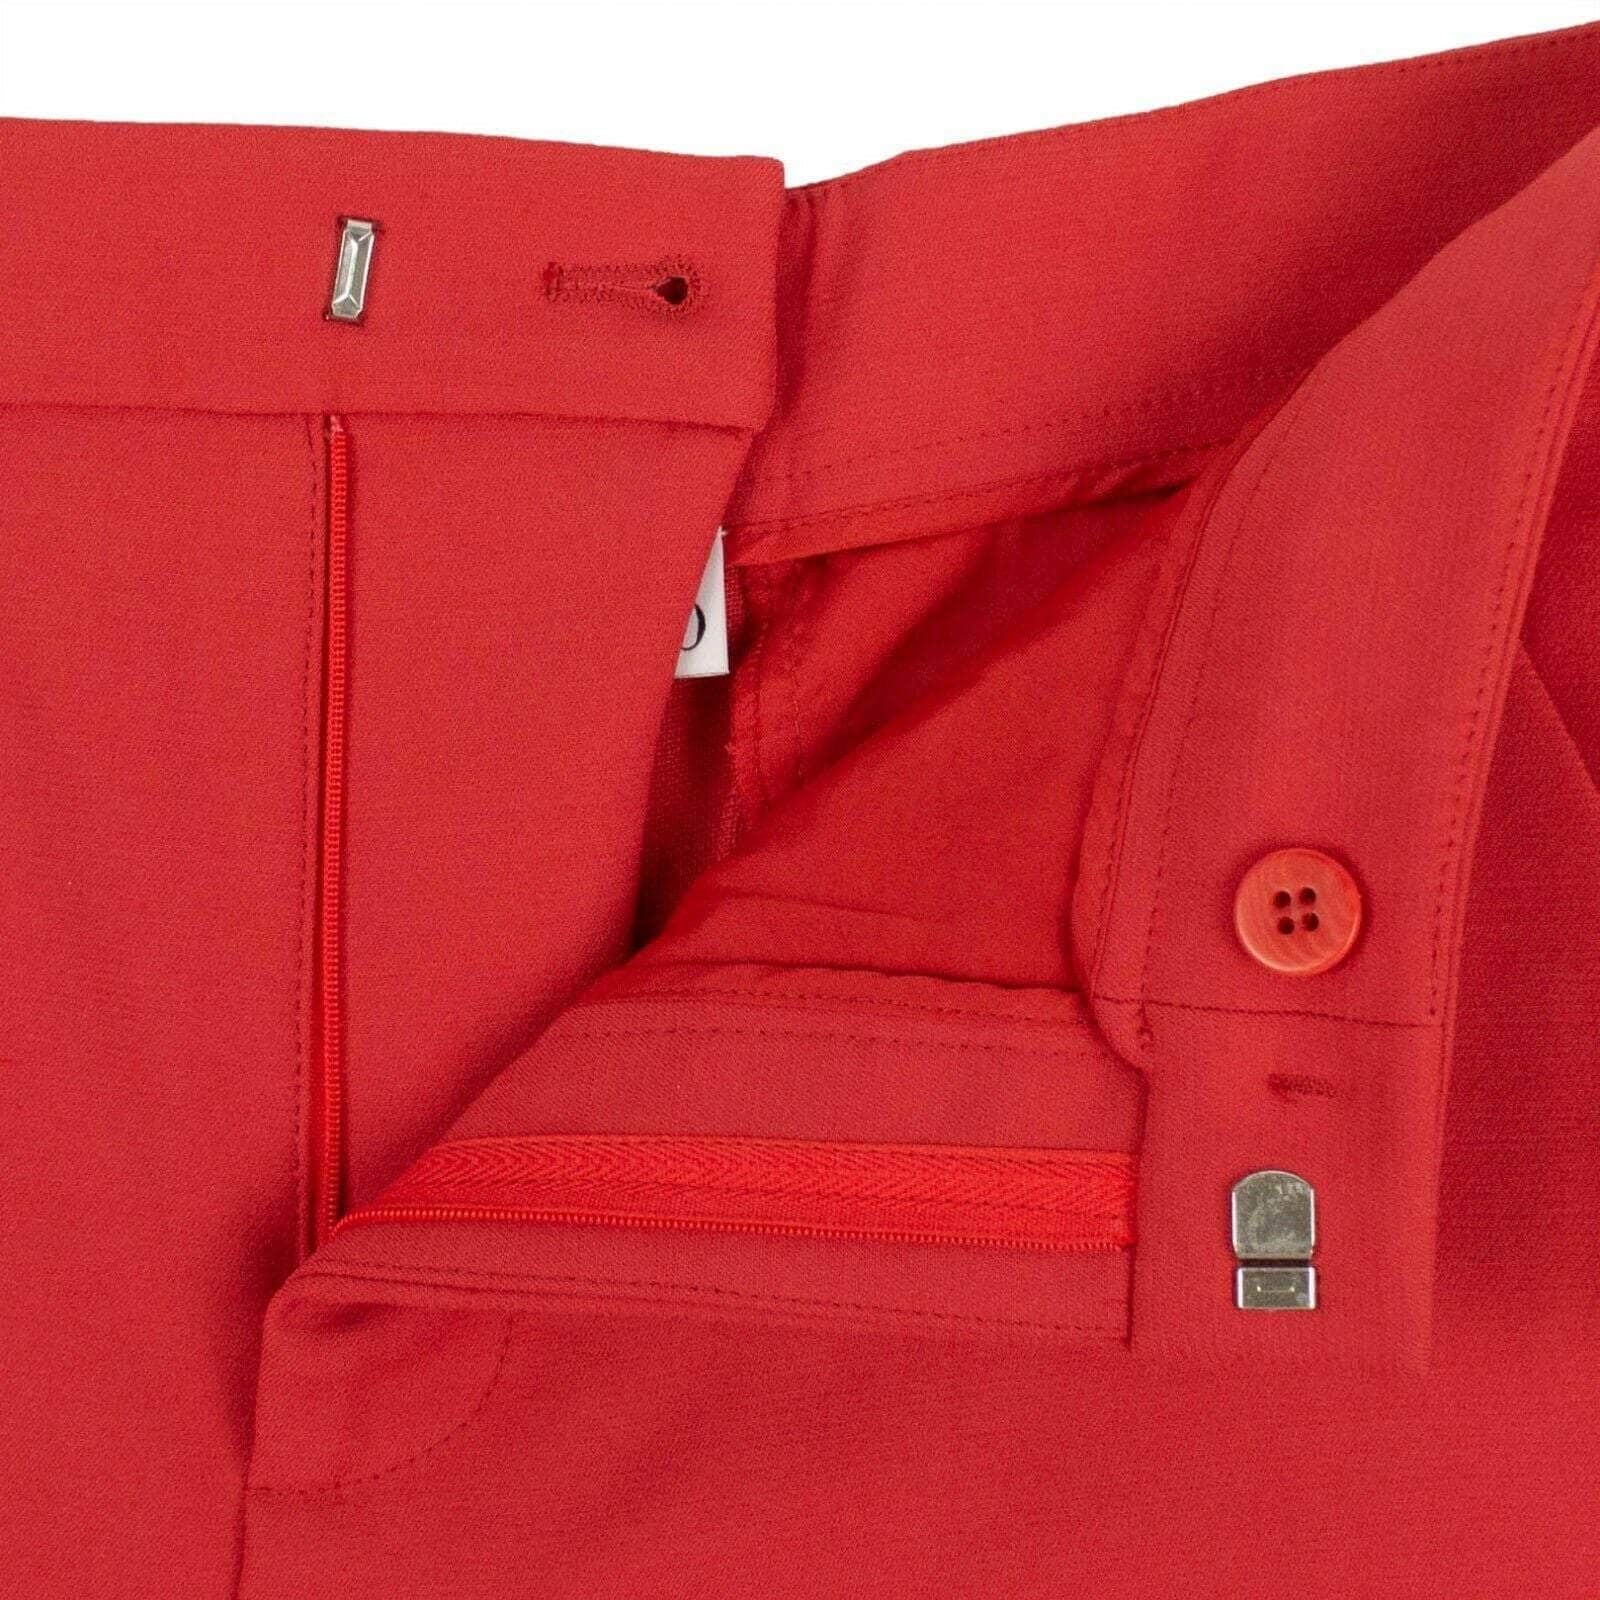 Red Valentino Shorts 40 Satin Shorts - Red 67V-382/40 67V-382/40